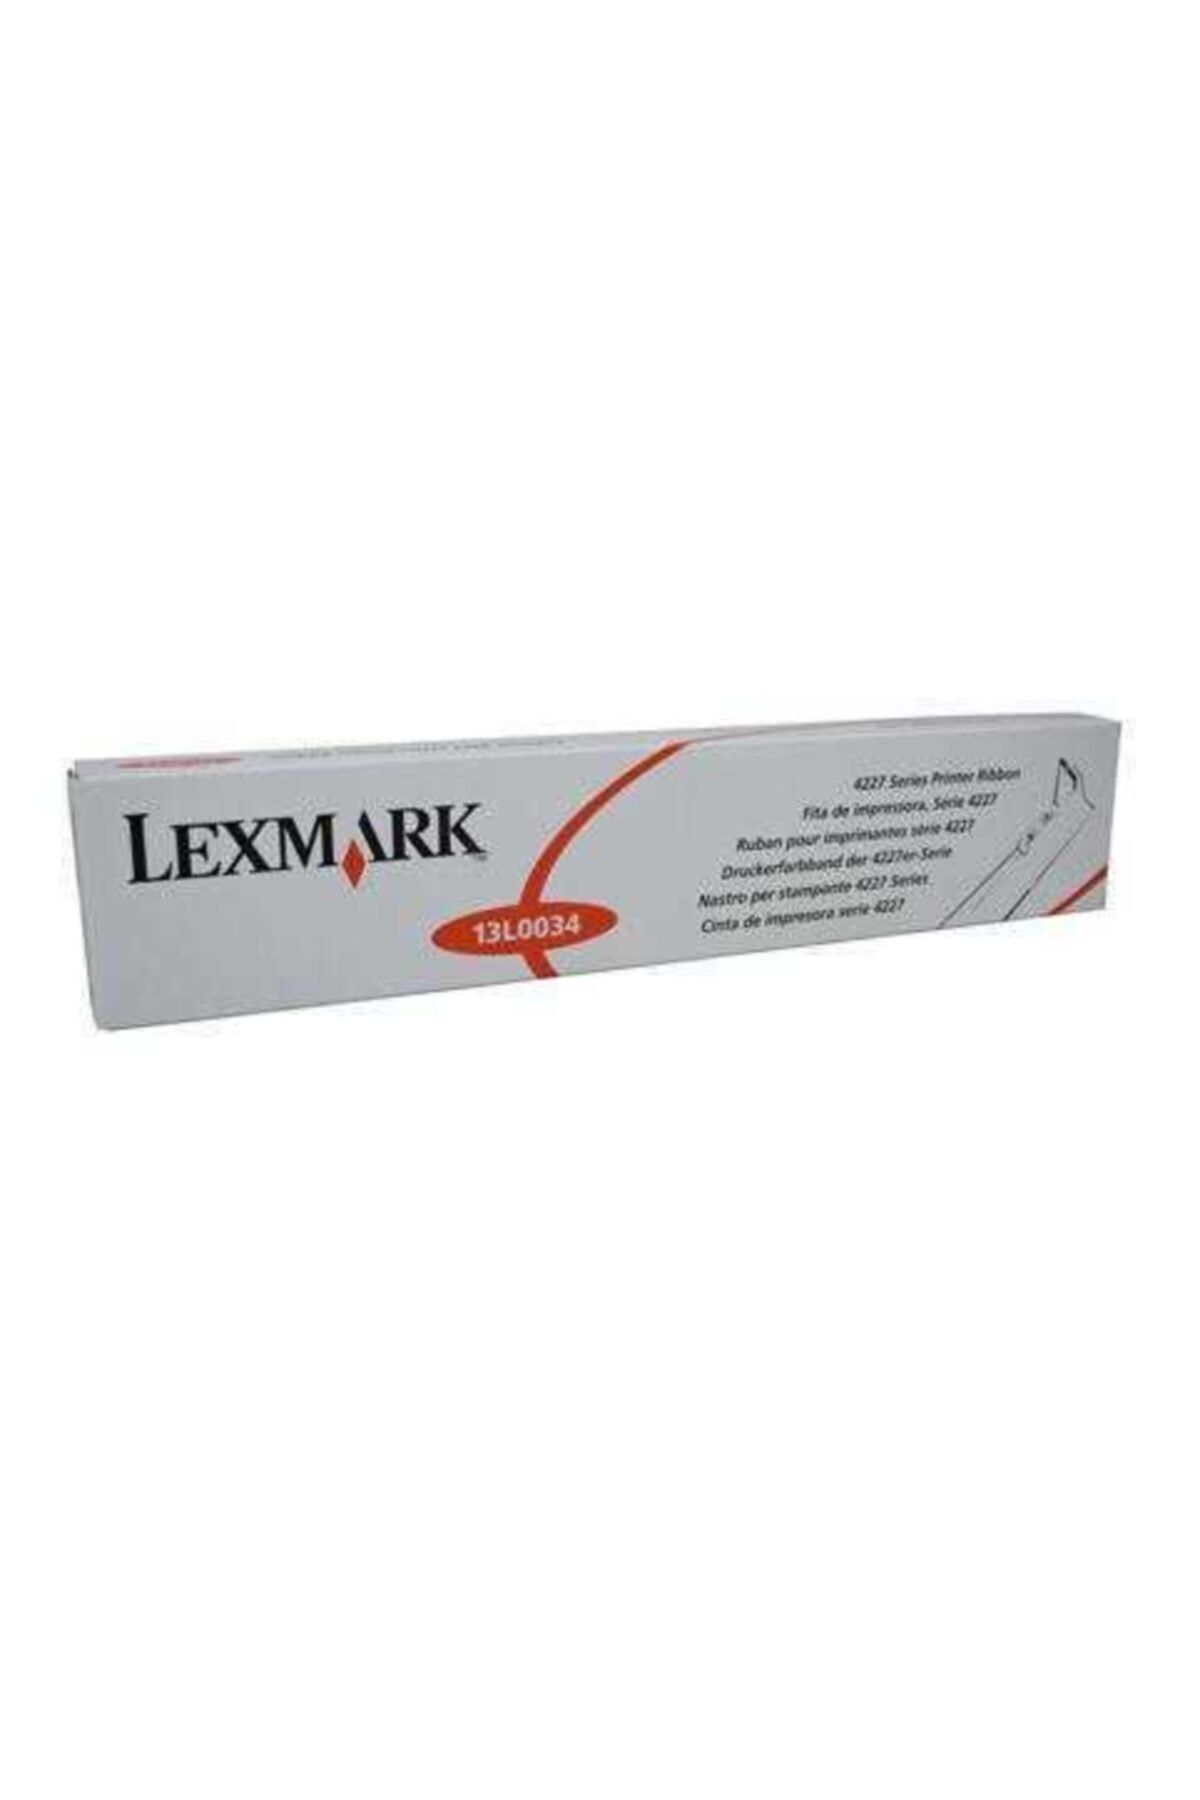 Lexmark 13l0034 Orjinal Siyah Şerit 4227